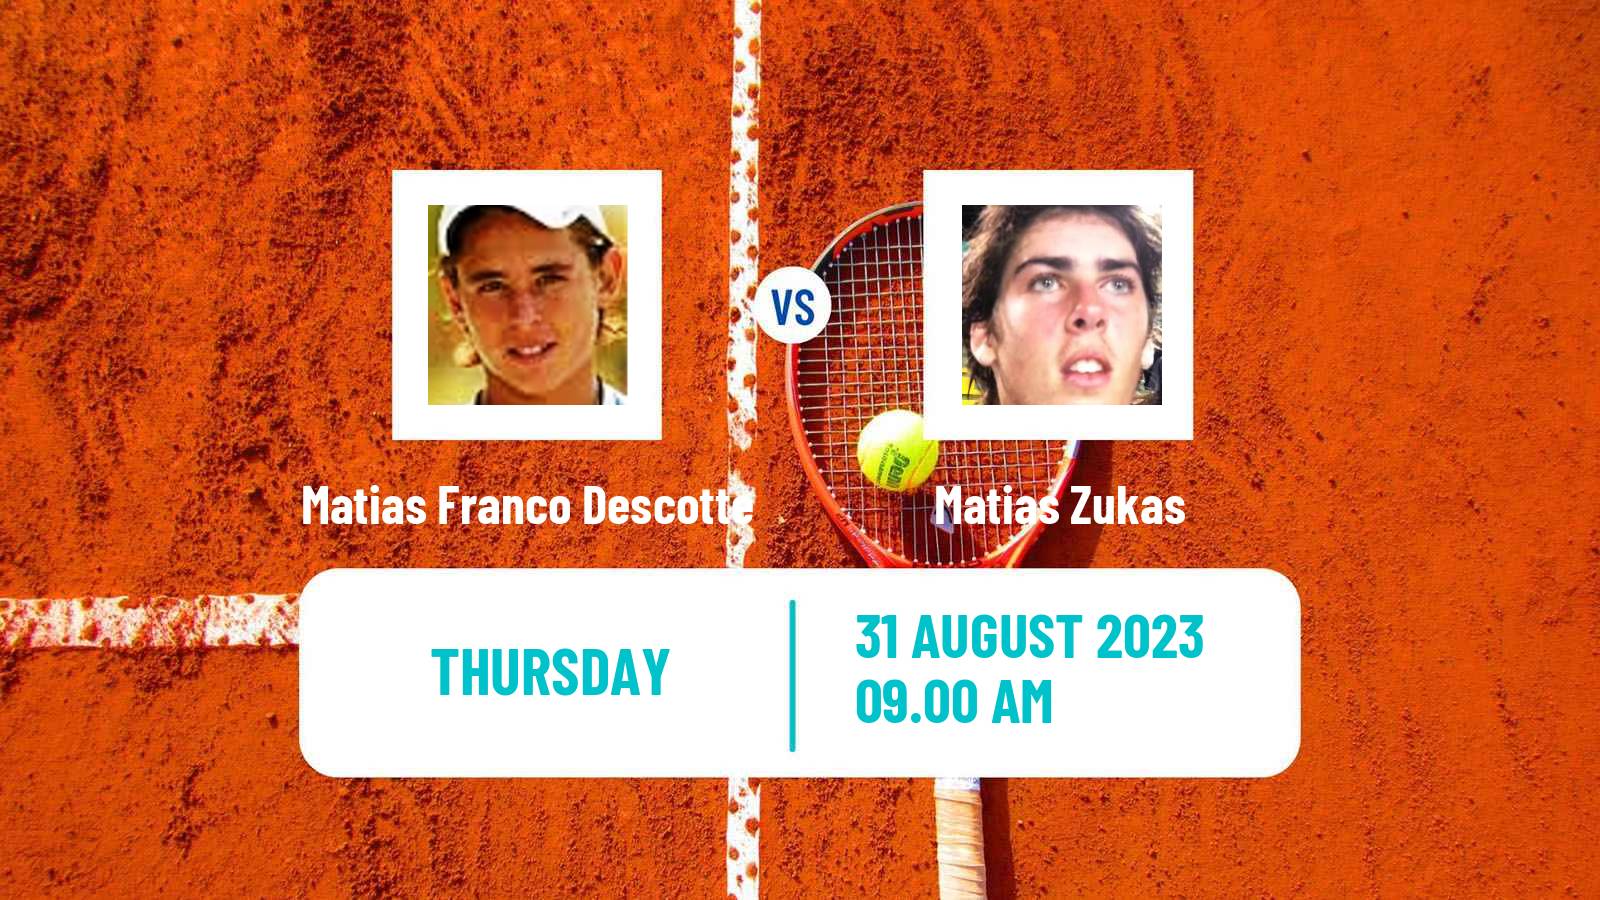 Tennis ITF M15 Buenos Aires Men Matias Franco Descotte - Matias Zukas